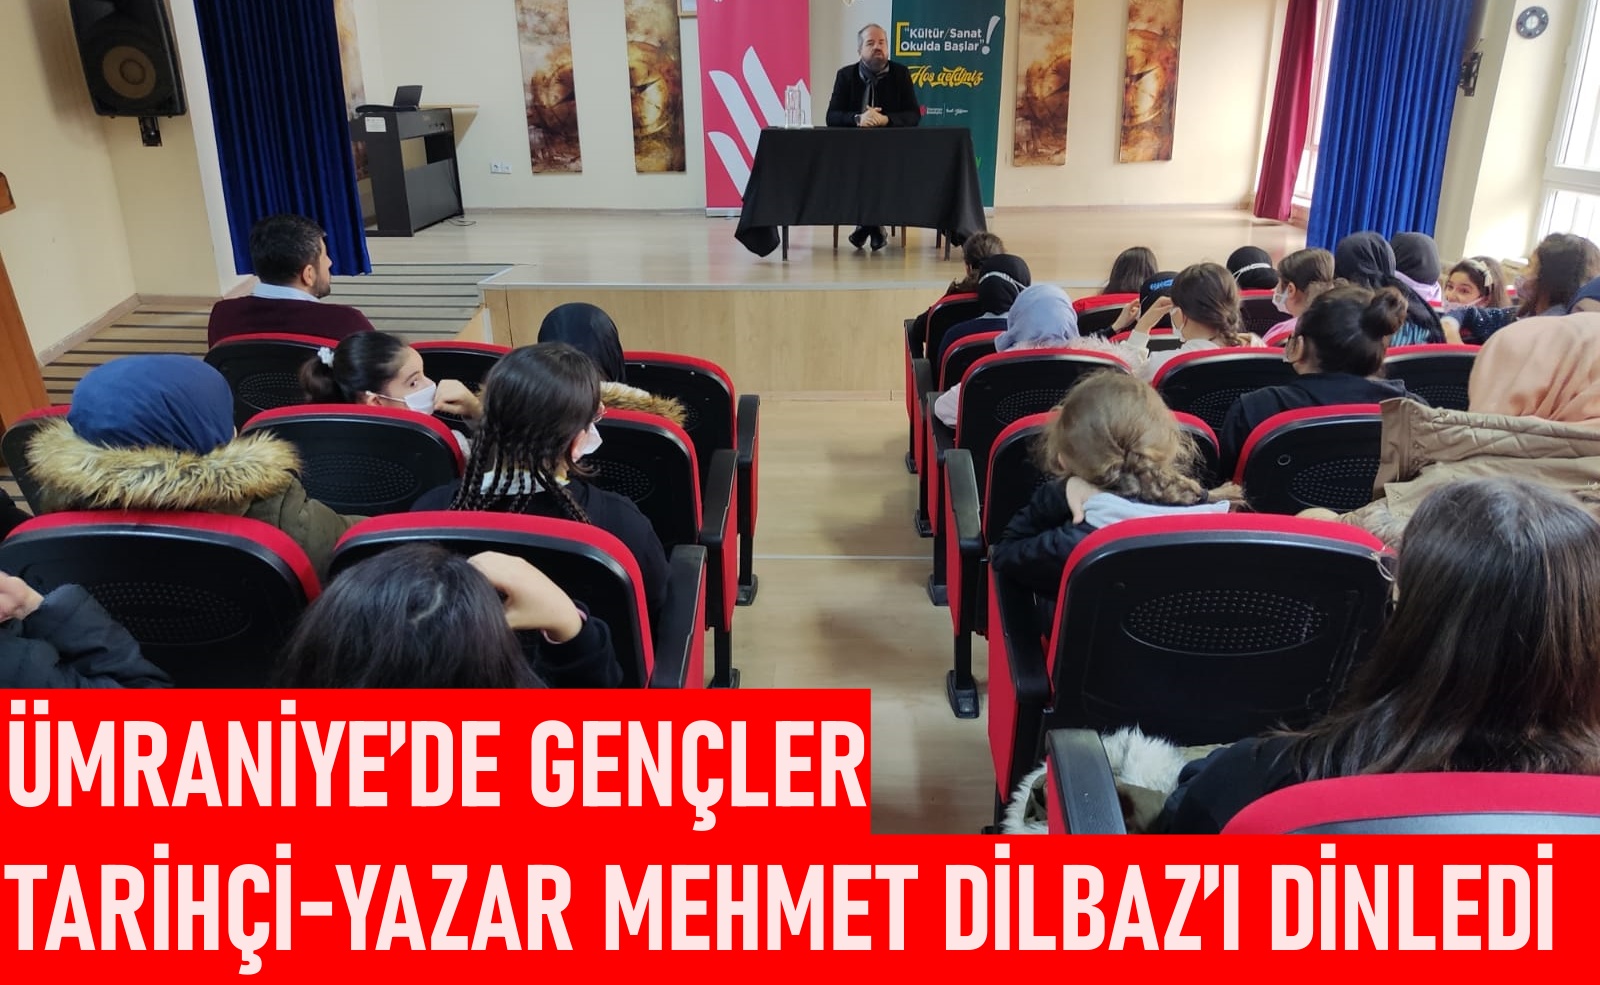 Ümraniye’de gençler Tarihçi-Yazar Mehmet Dilbaz’ı dinledi